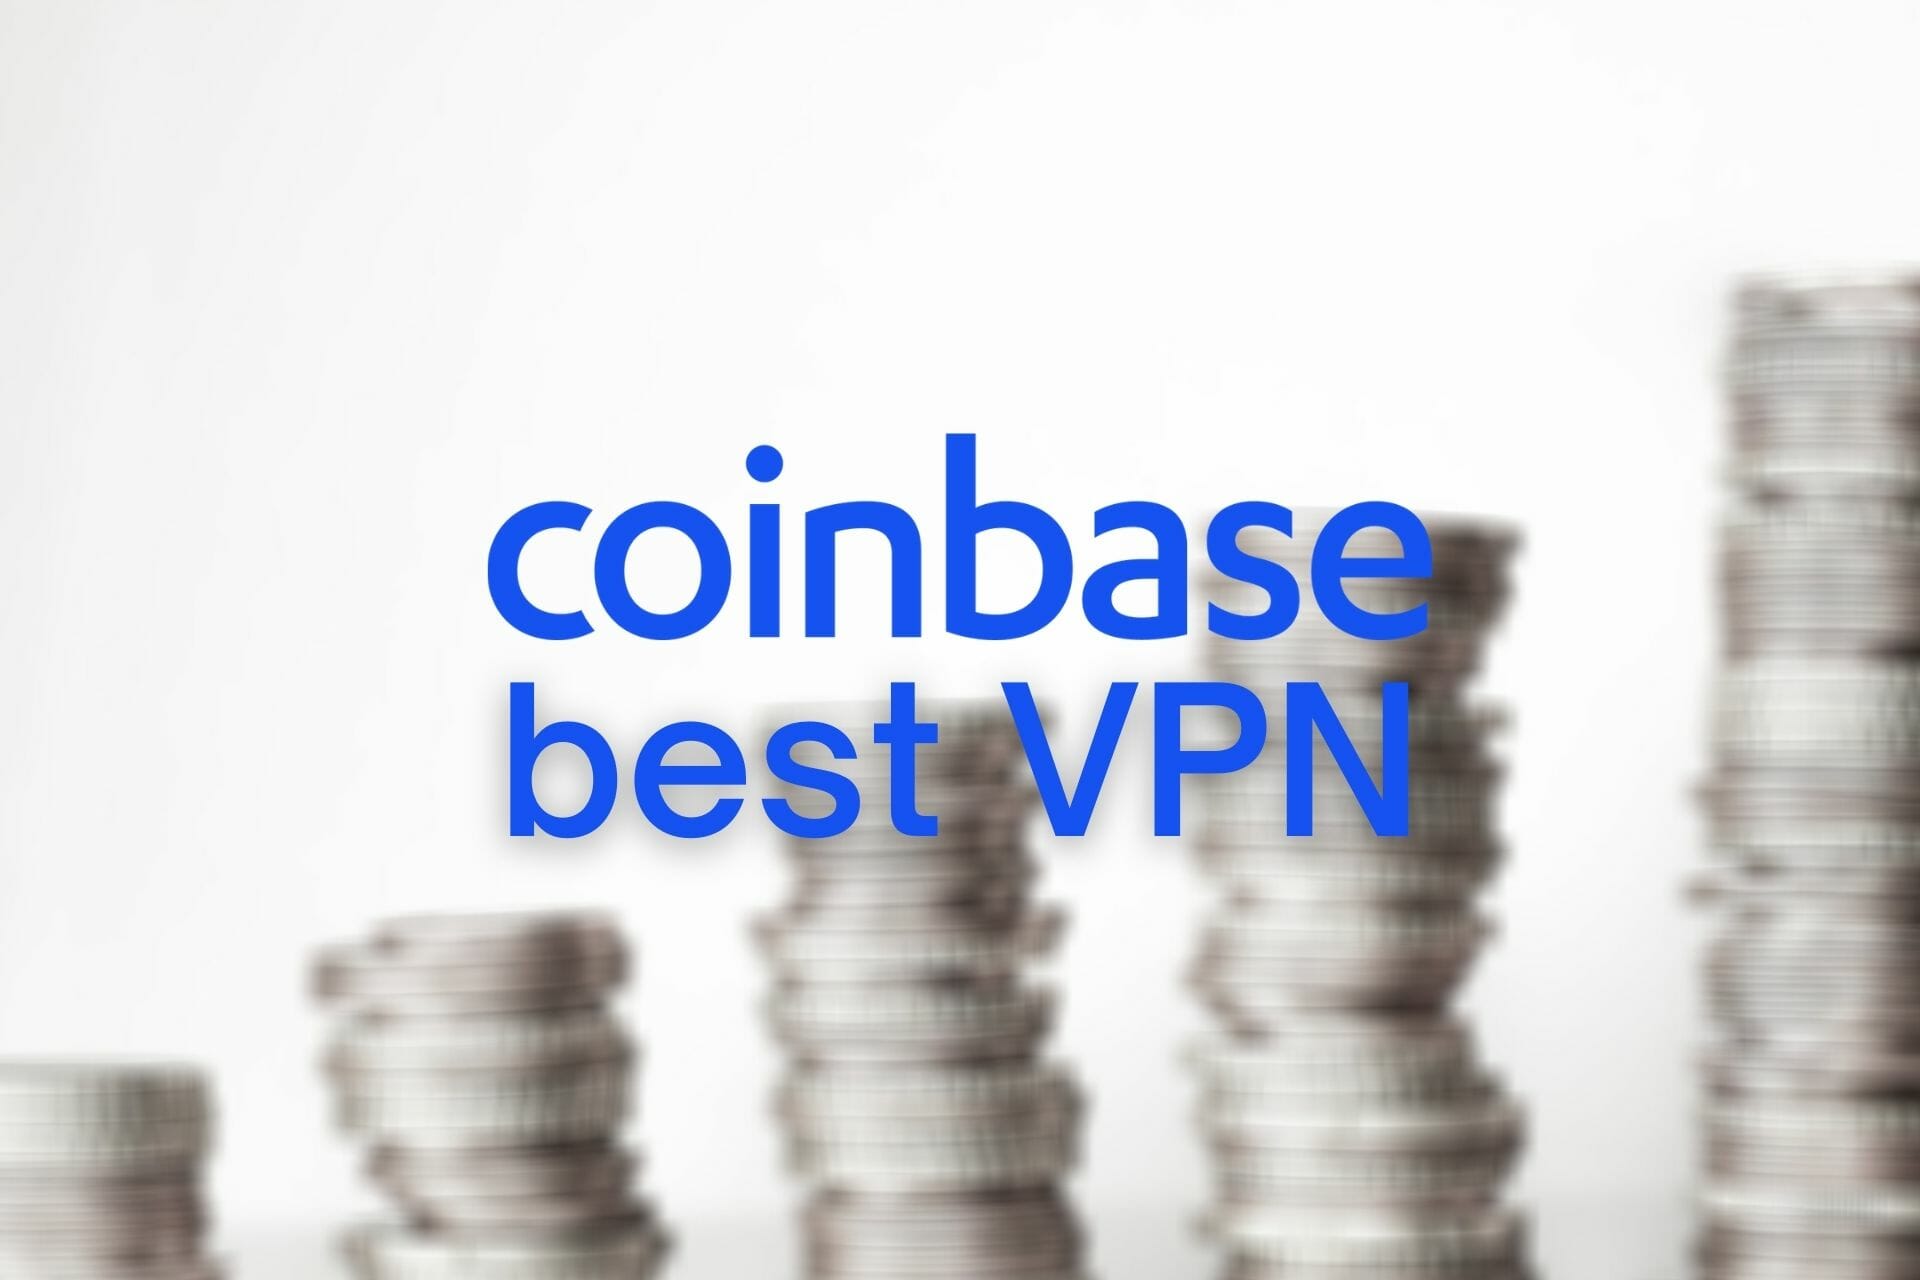 best VPN coinbase